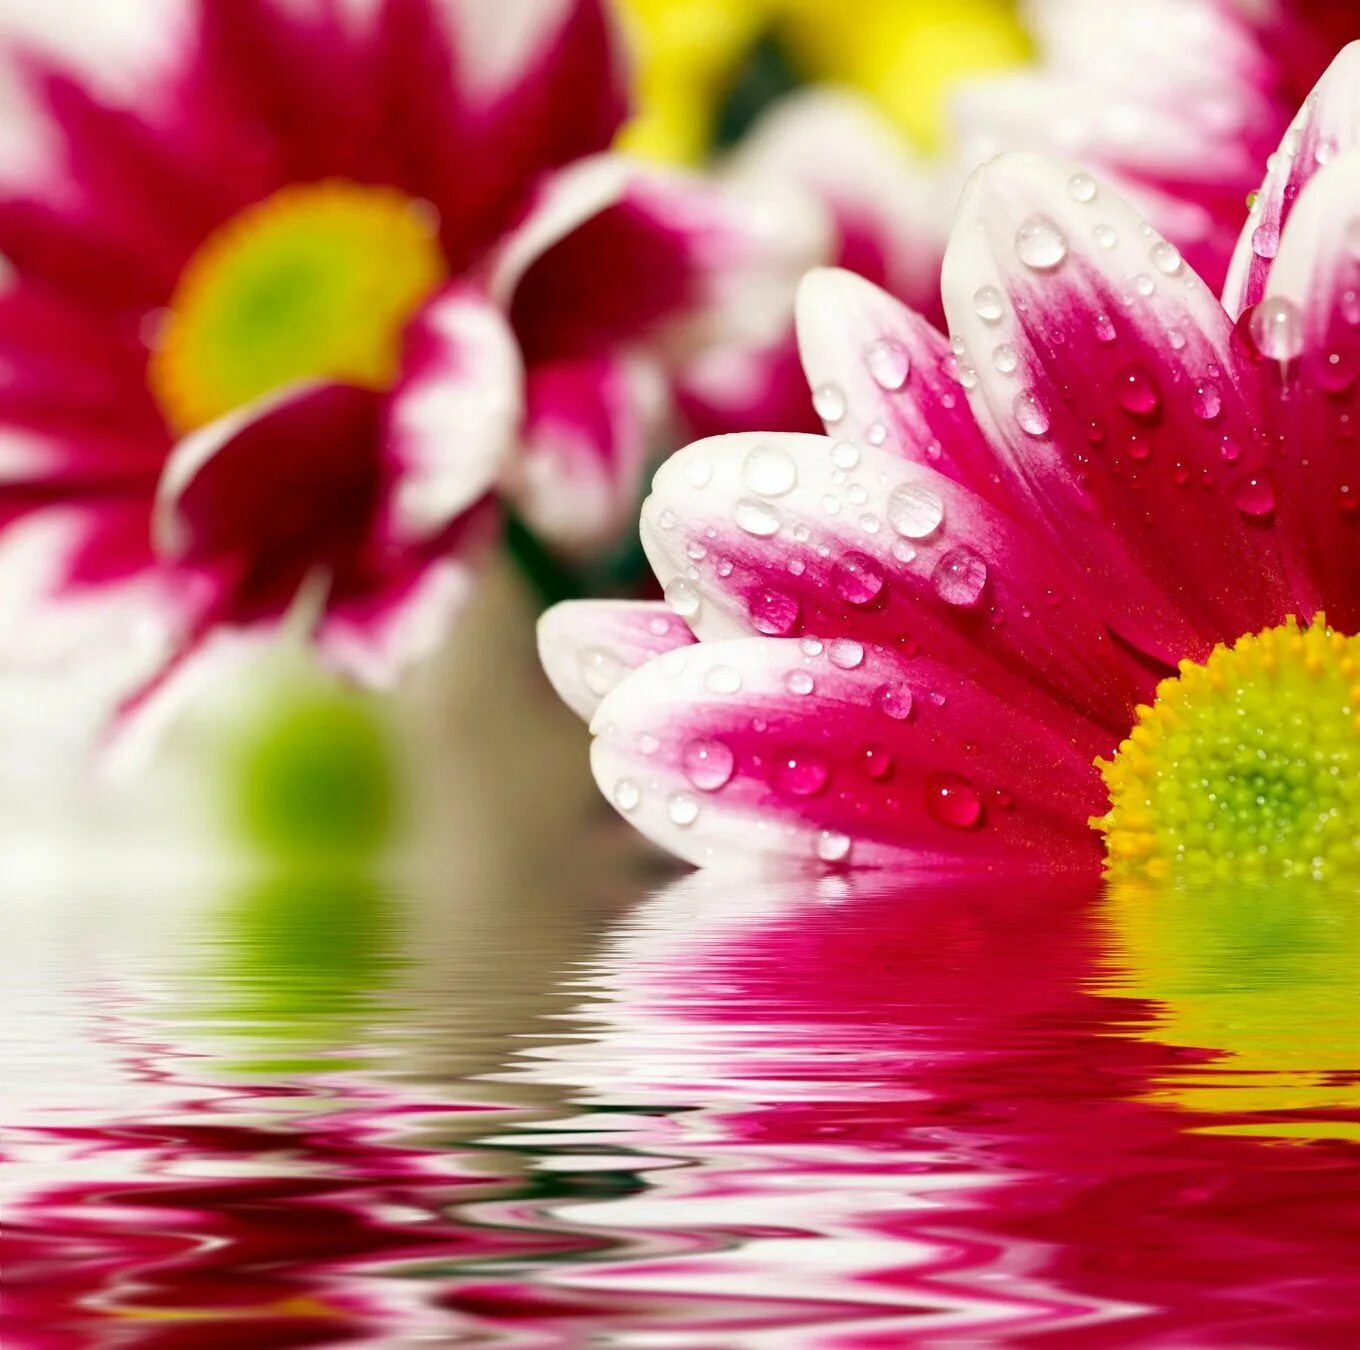 Красивого дня картинки. Открытки хорошего дня. Пожелания удачного дня. Красивые пожелания хорошего дня. Яркие цветы в воде.